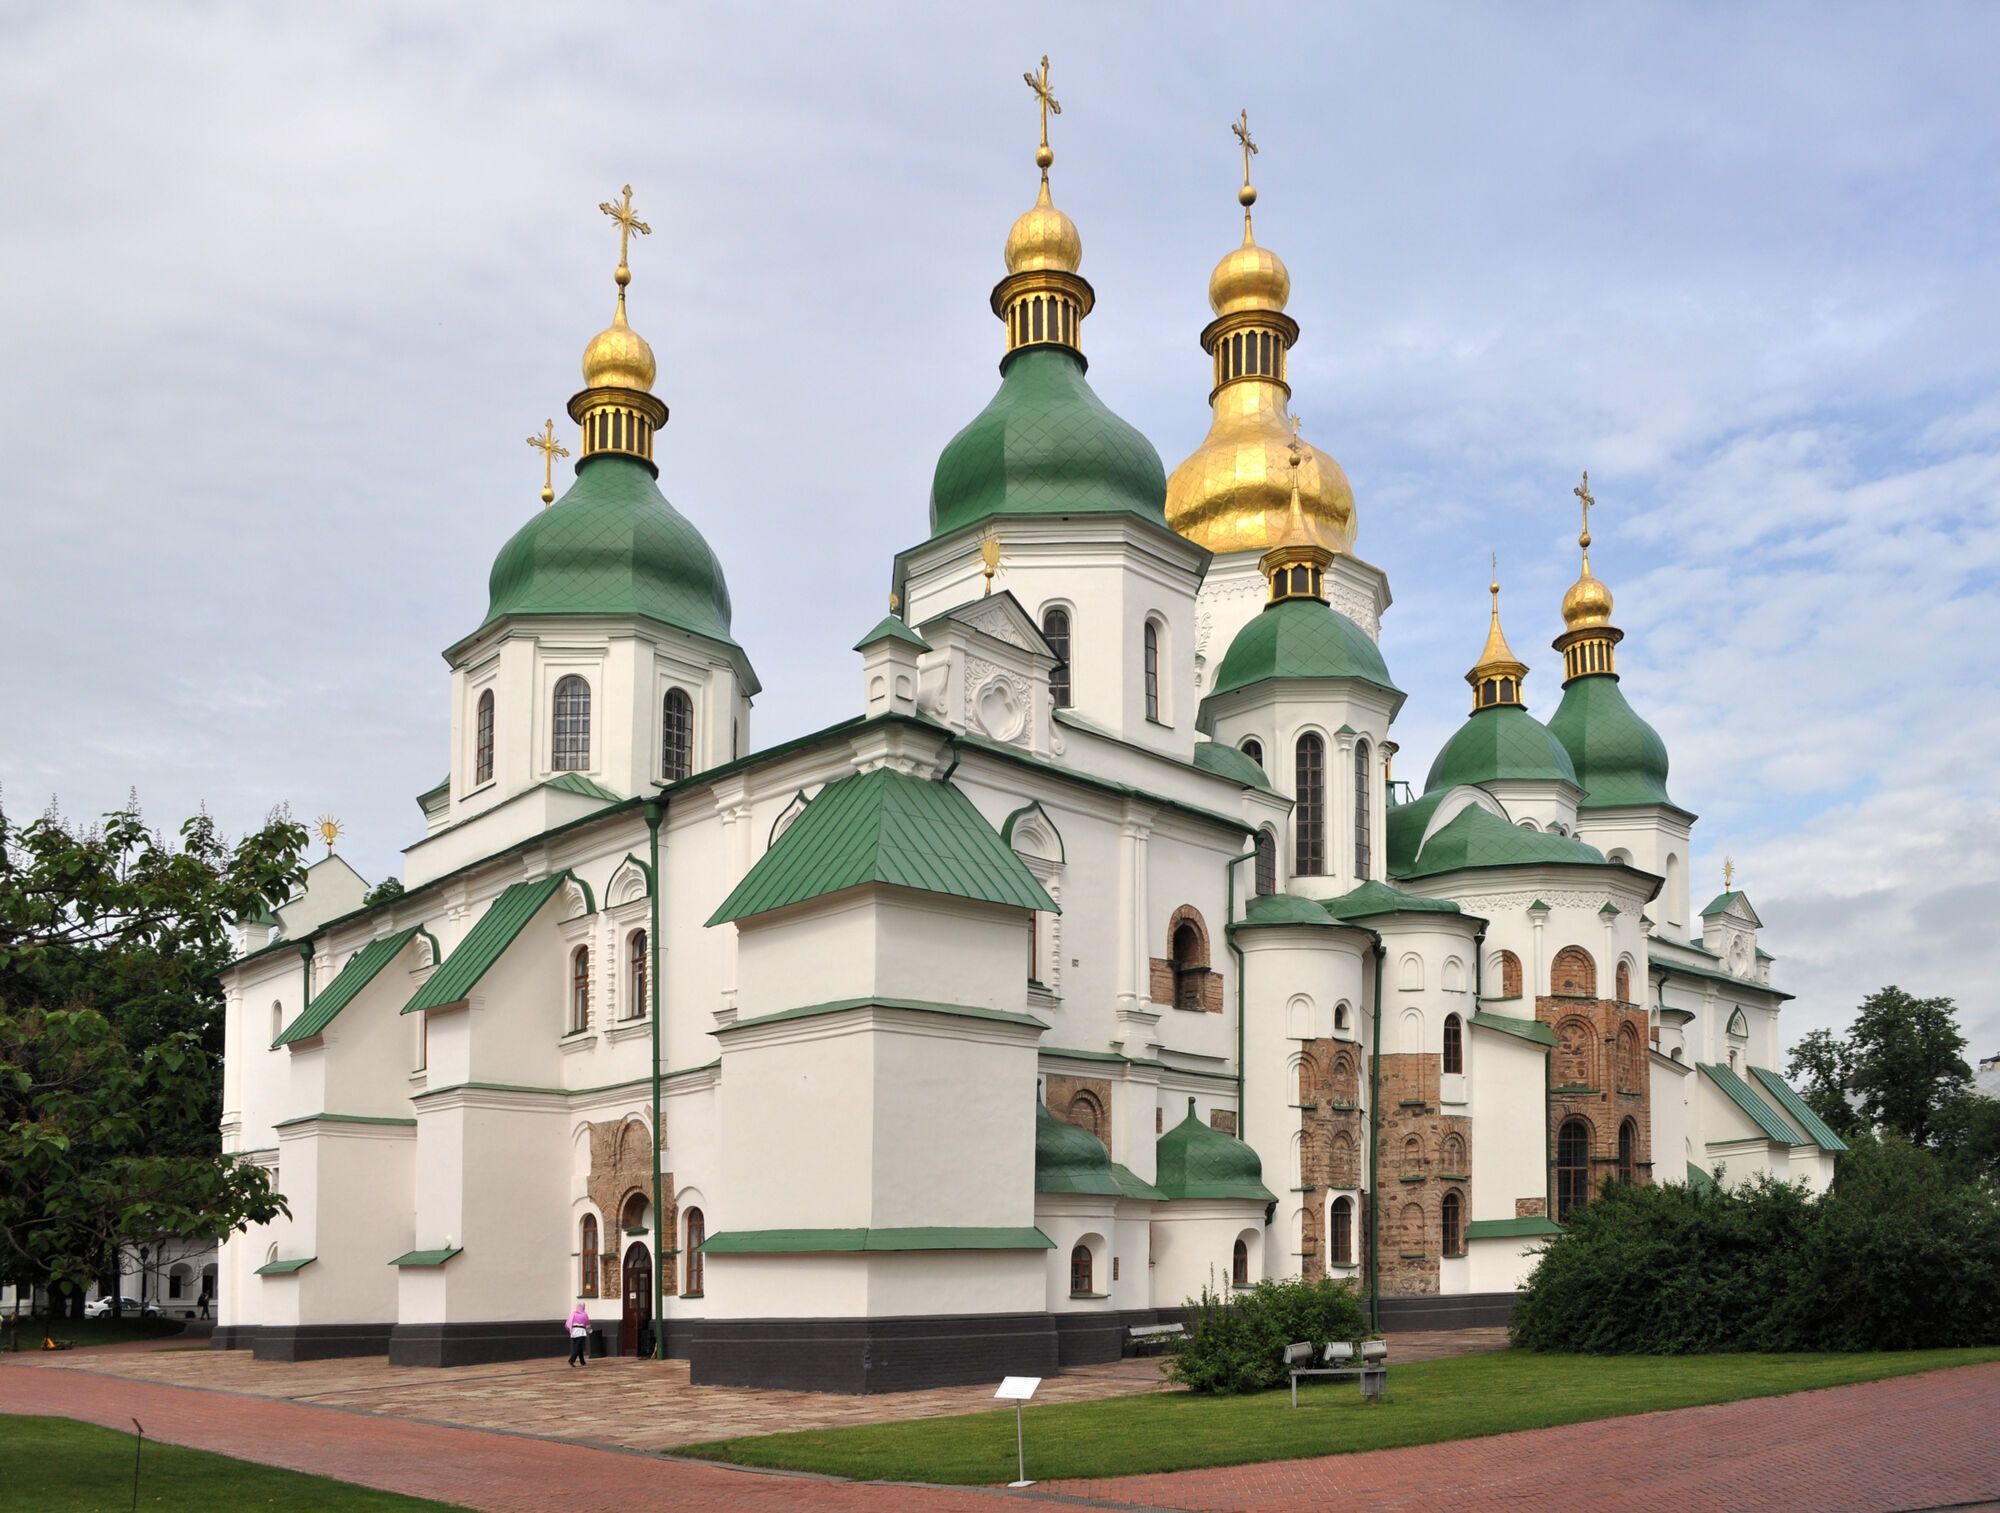 Софійський собор є однією з найдавніших церков в Україні